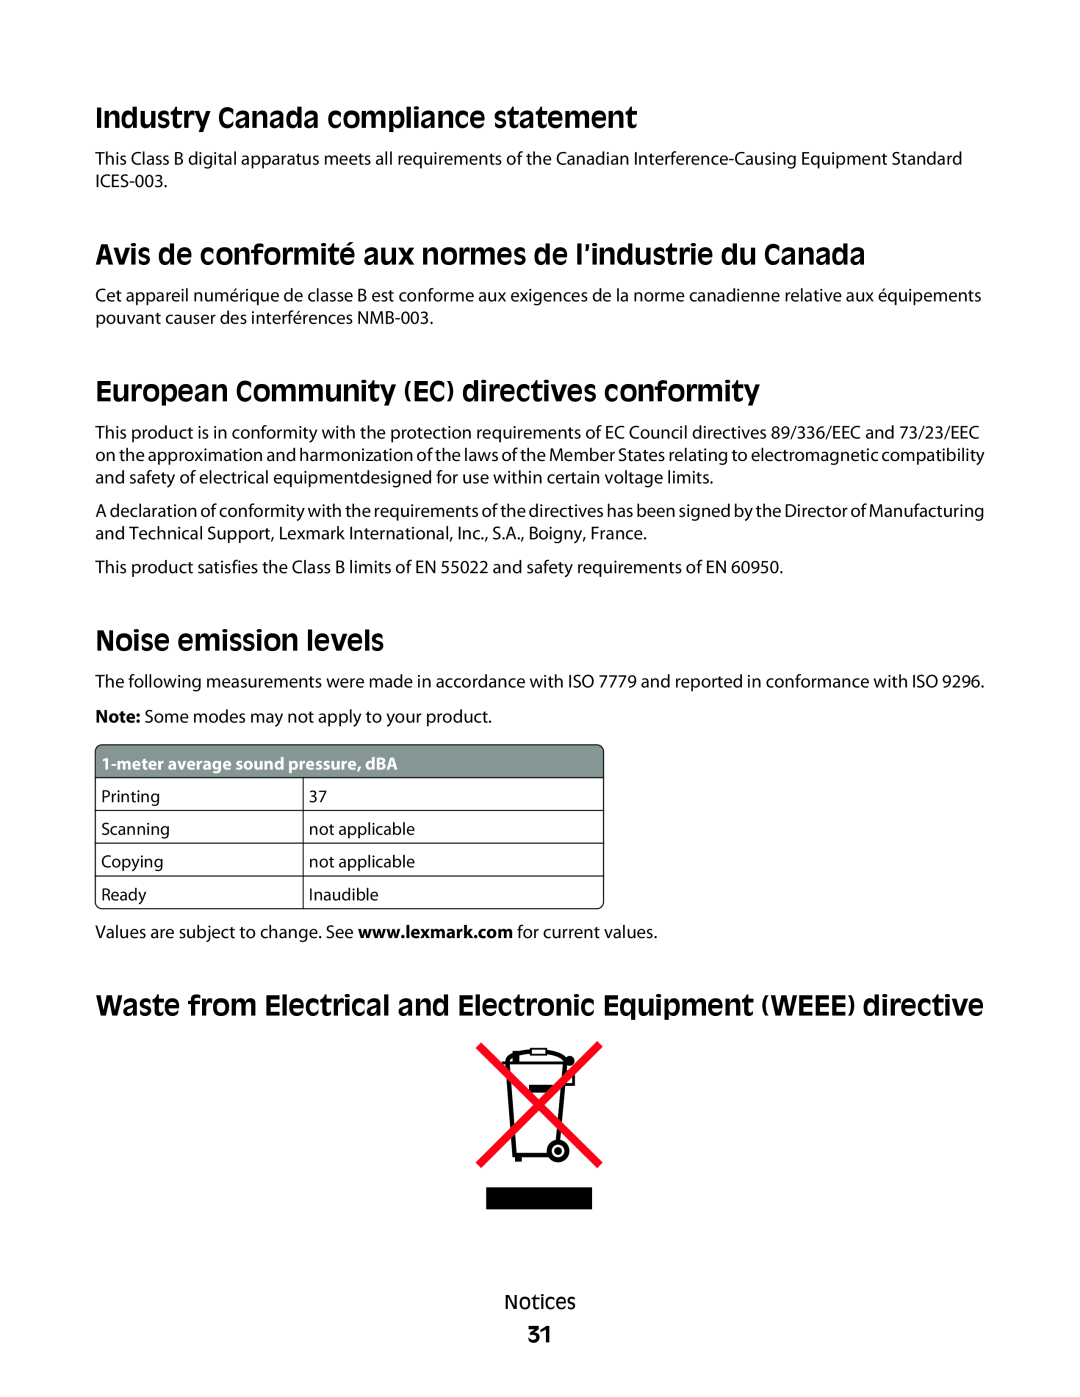 Lexmark P200 Series manual Industry Canada compliance statement, Avis de conformité aux normes de l’industrie du Canada 